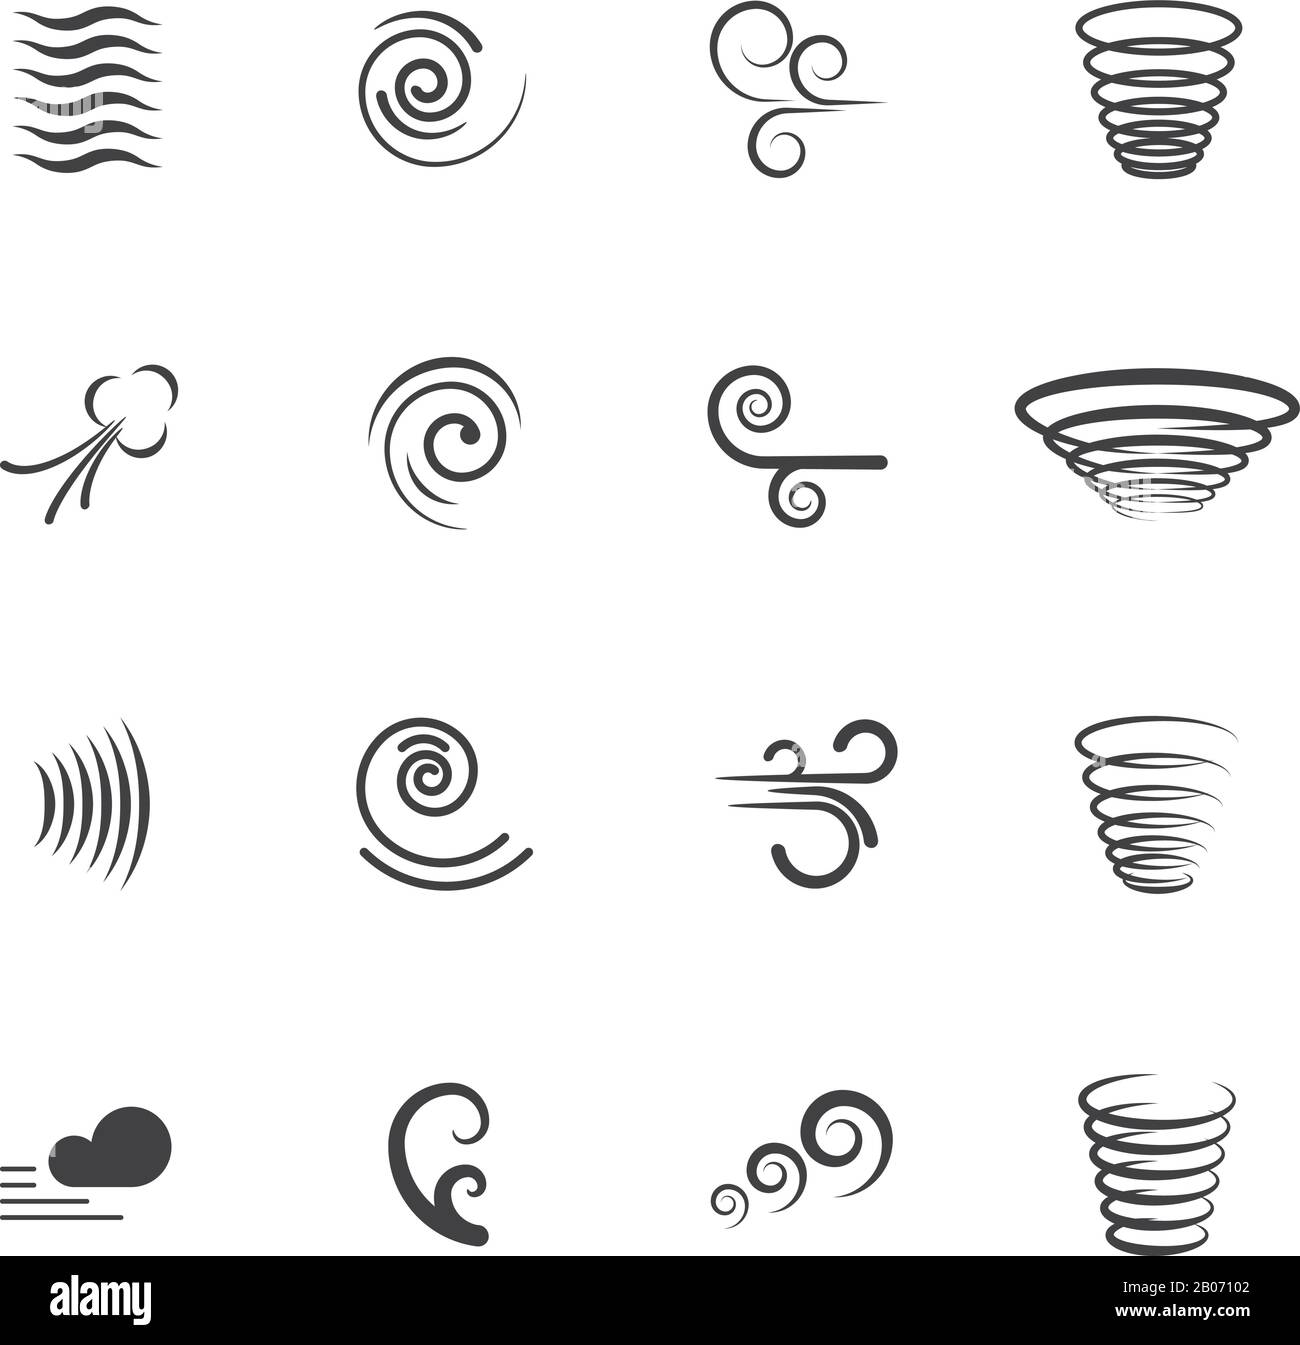 Icone dei vettori di movimento, vento. Insieme di swirl e onda, vortice e tornado illustrazione Illustrazione Vettoriale